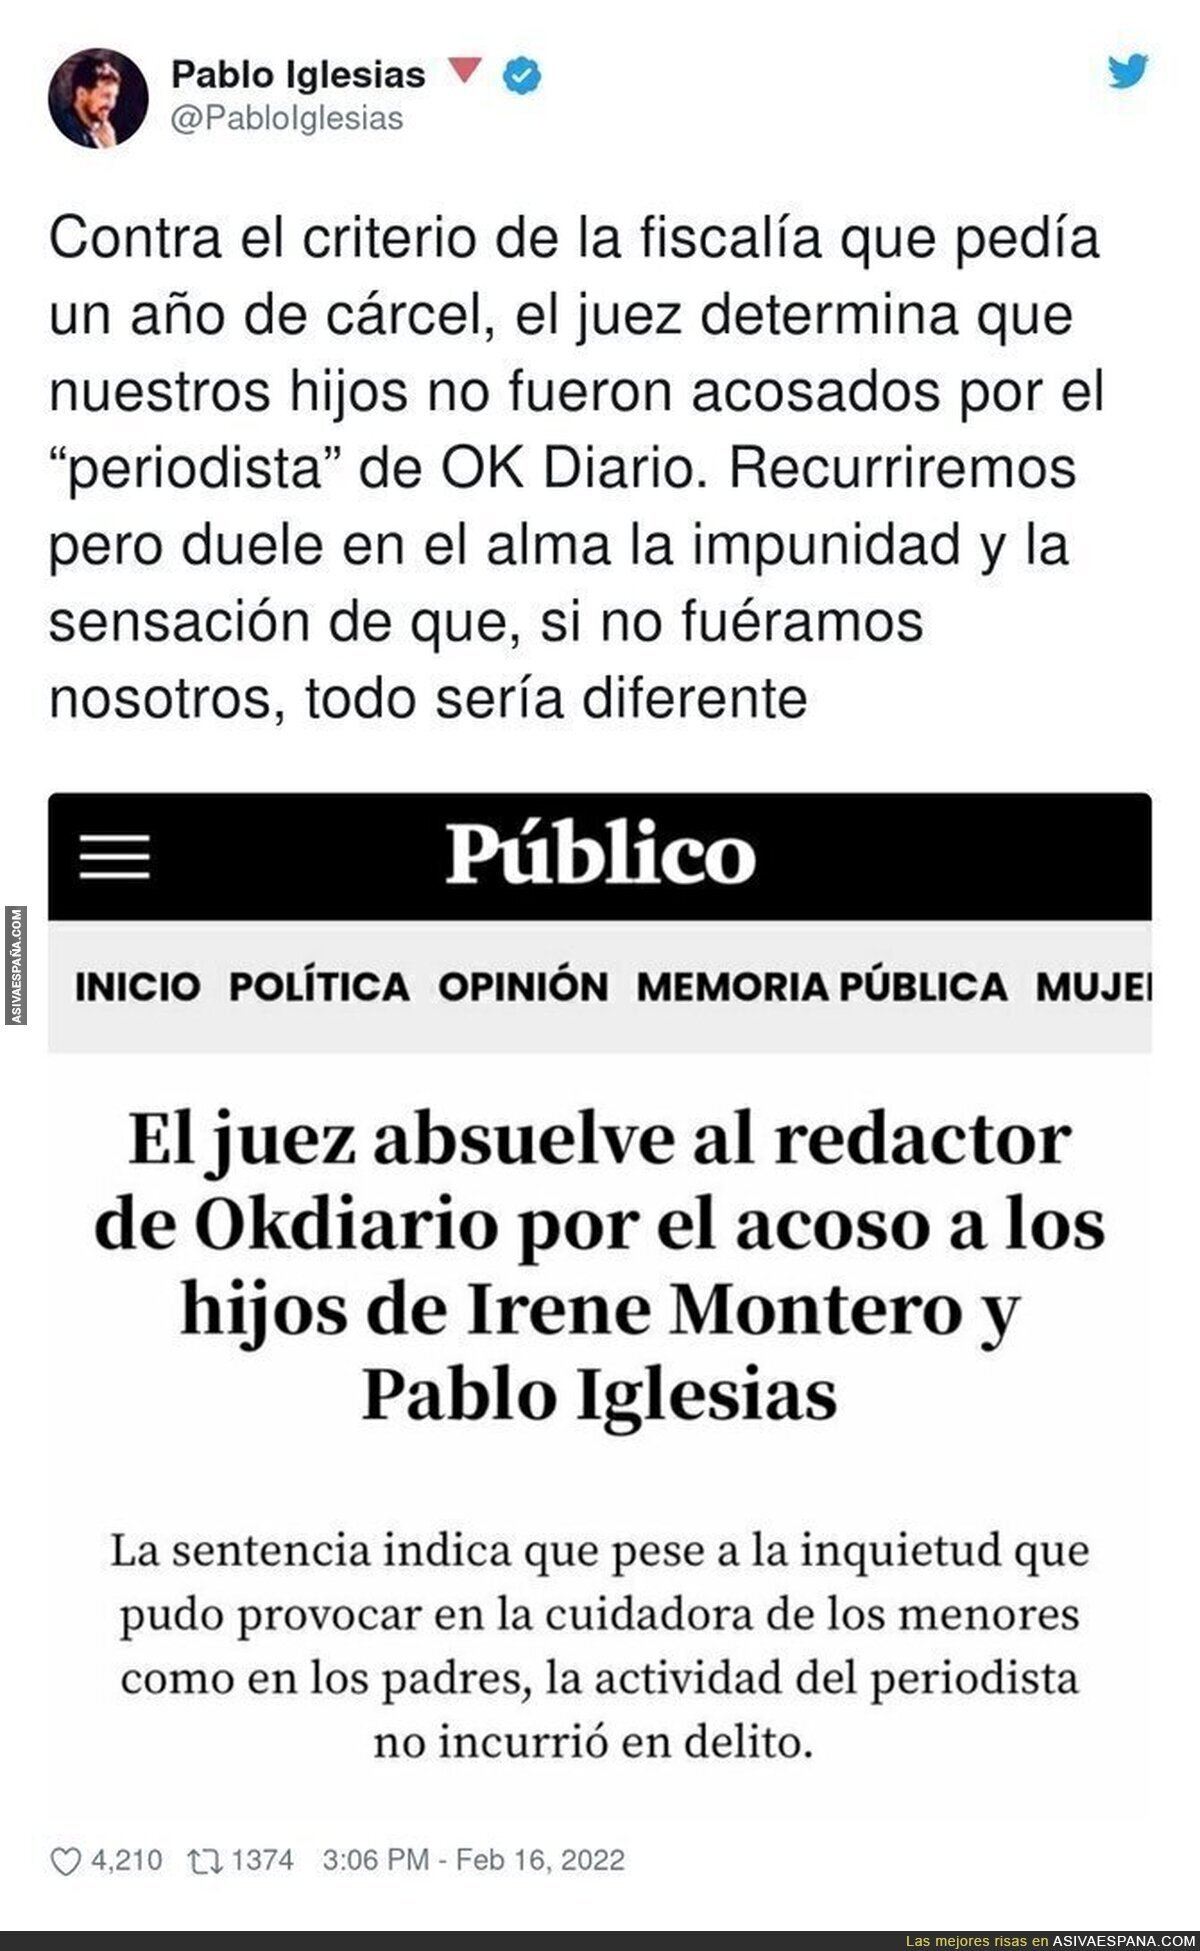 La frustración de Pablo Iglesias al ver que en España no hay justicia ni con sus hijos